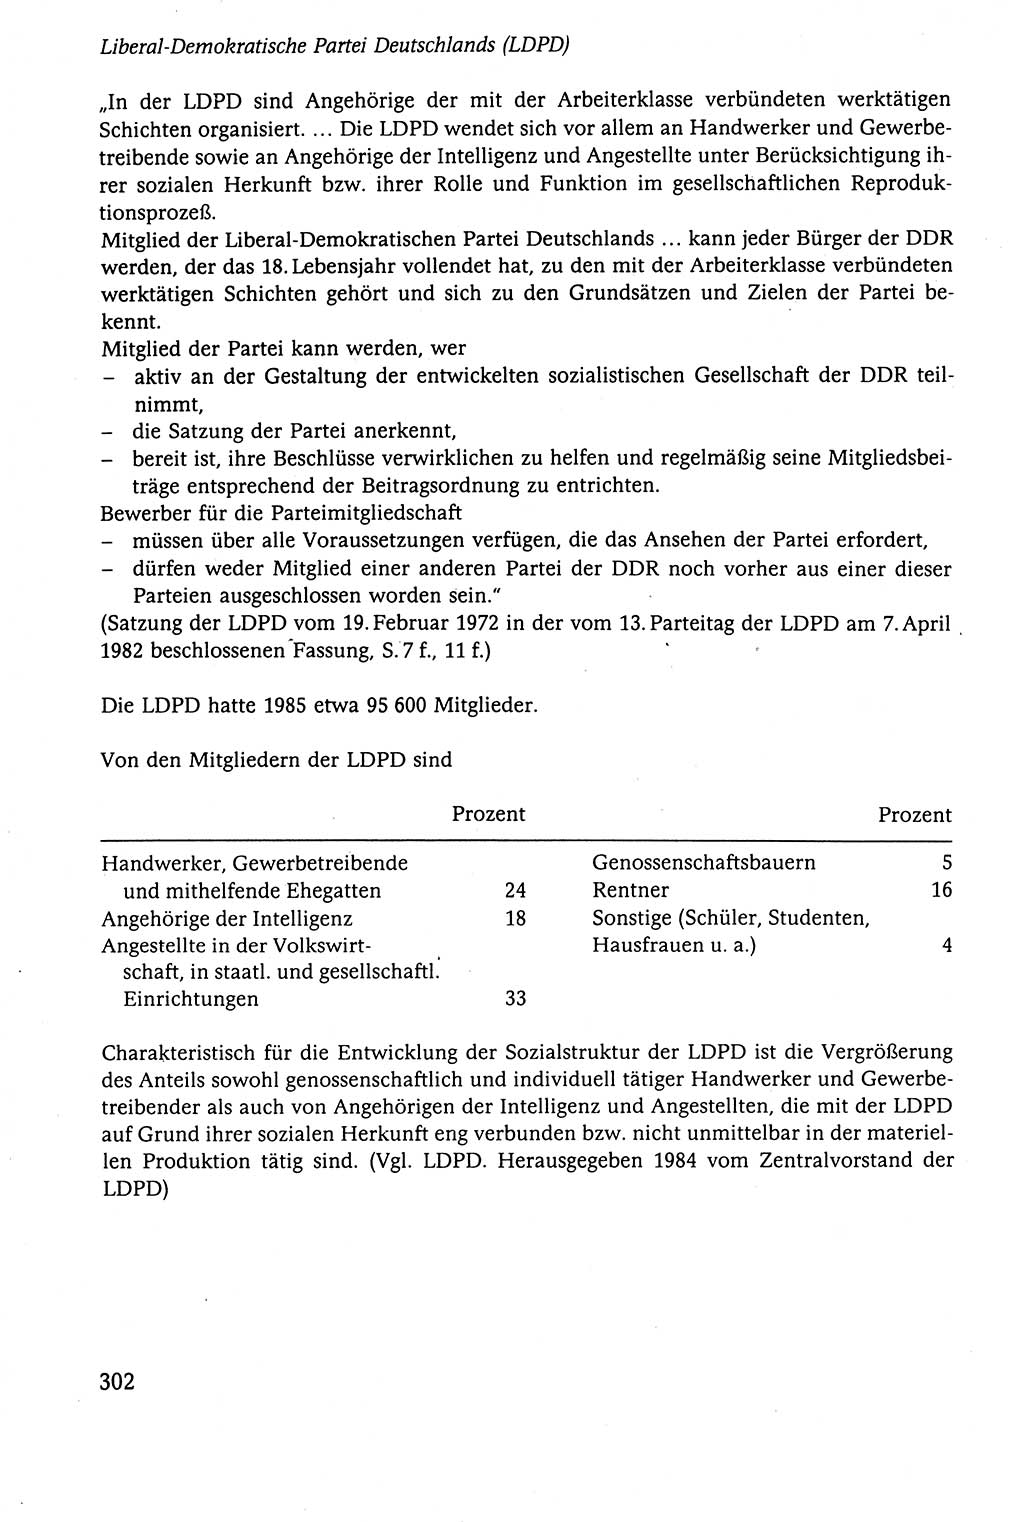 Der Staat im politischen System der DDR (Deutsche Demokratische Republik) 1986, Seite 302 (St. pol. Sys. DDR 1986, S. 302)